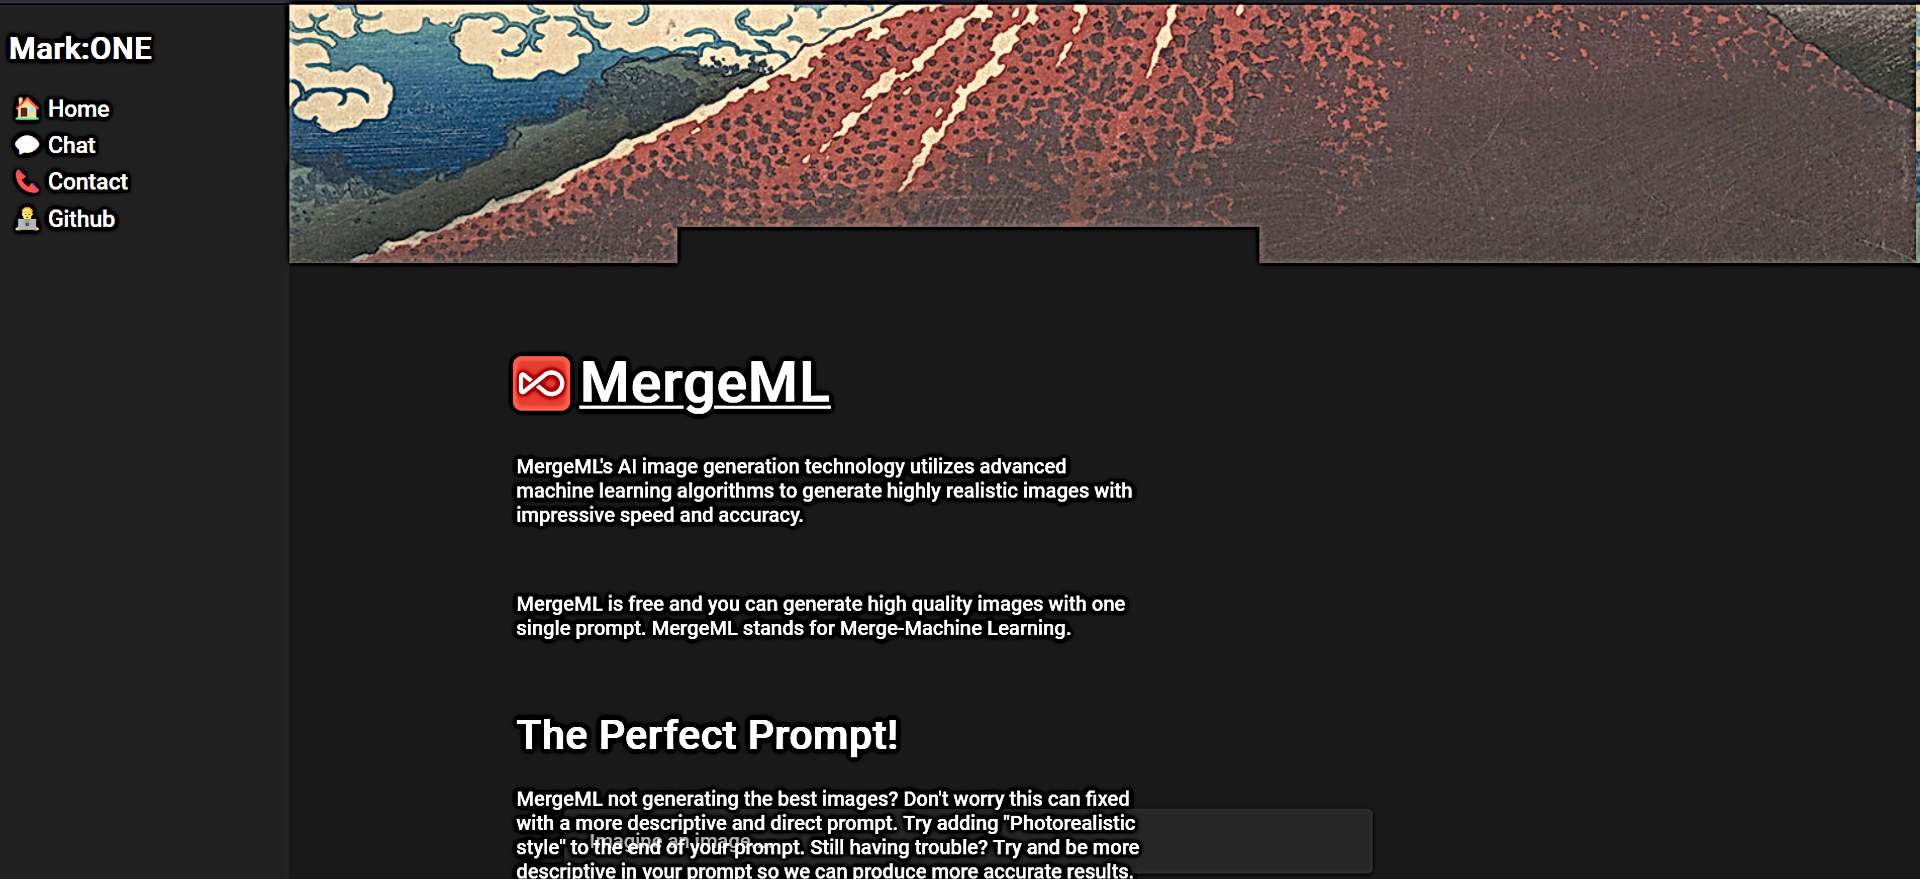 MergeML featured